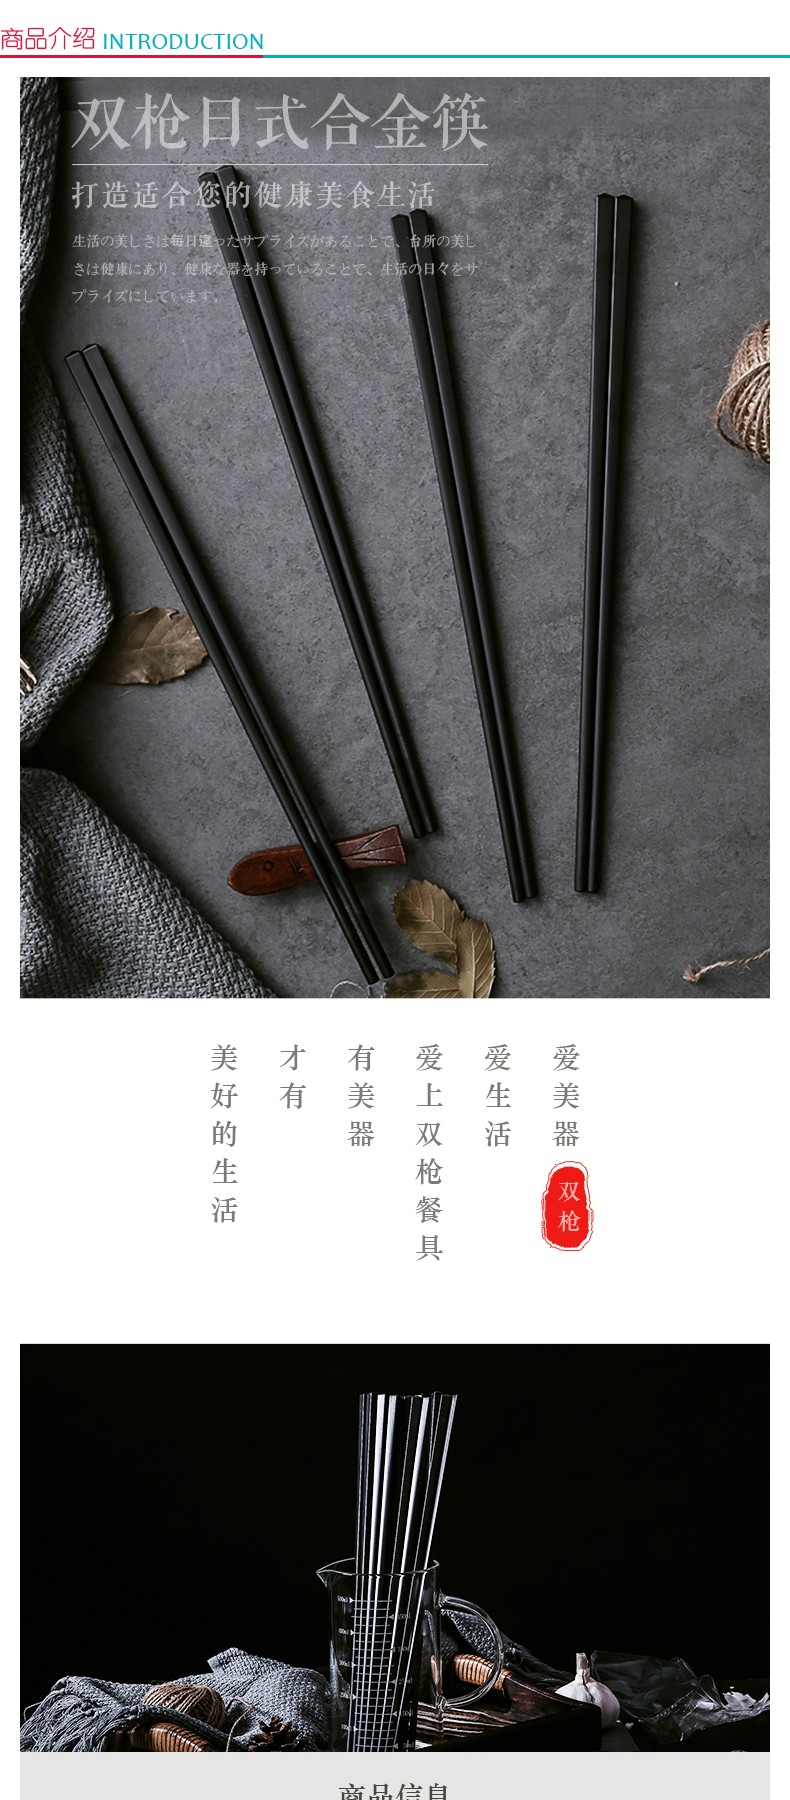 双枪 Suncha 家用合金筷子 KZ4060 27cm  10双/组